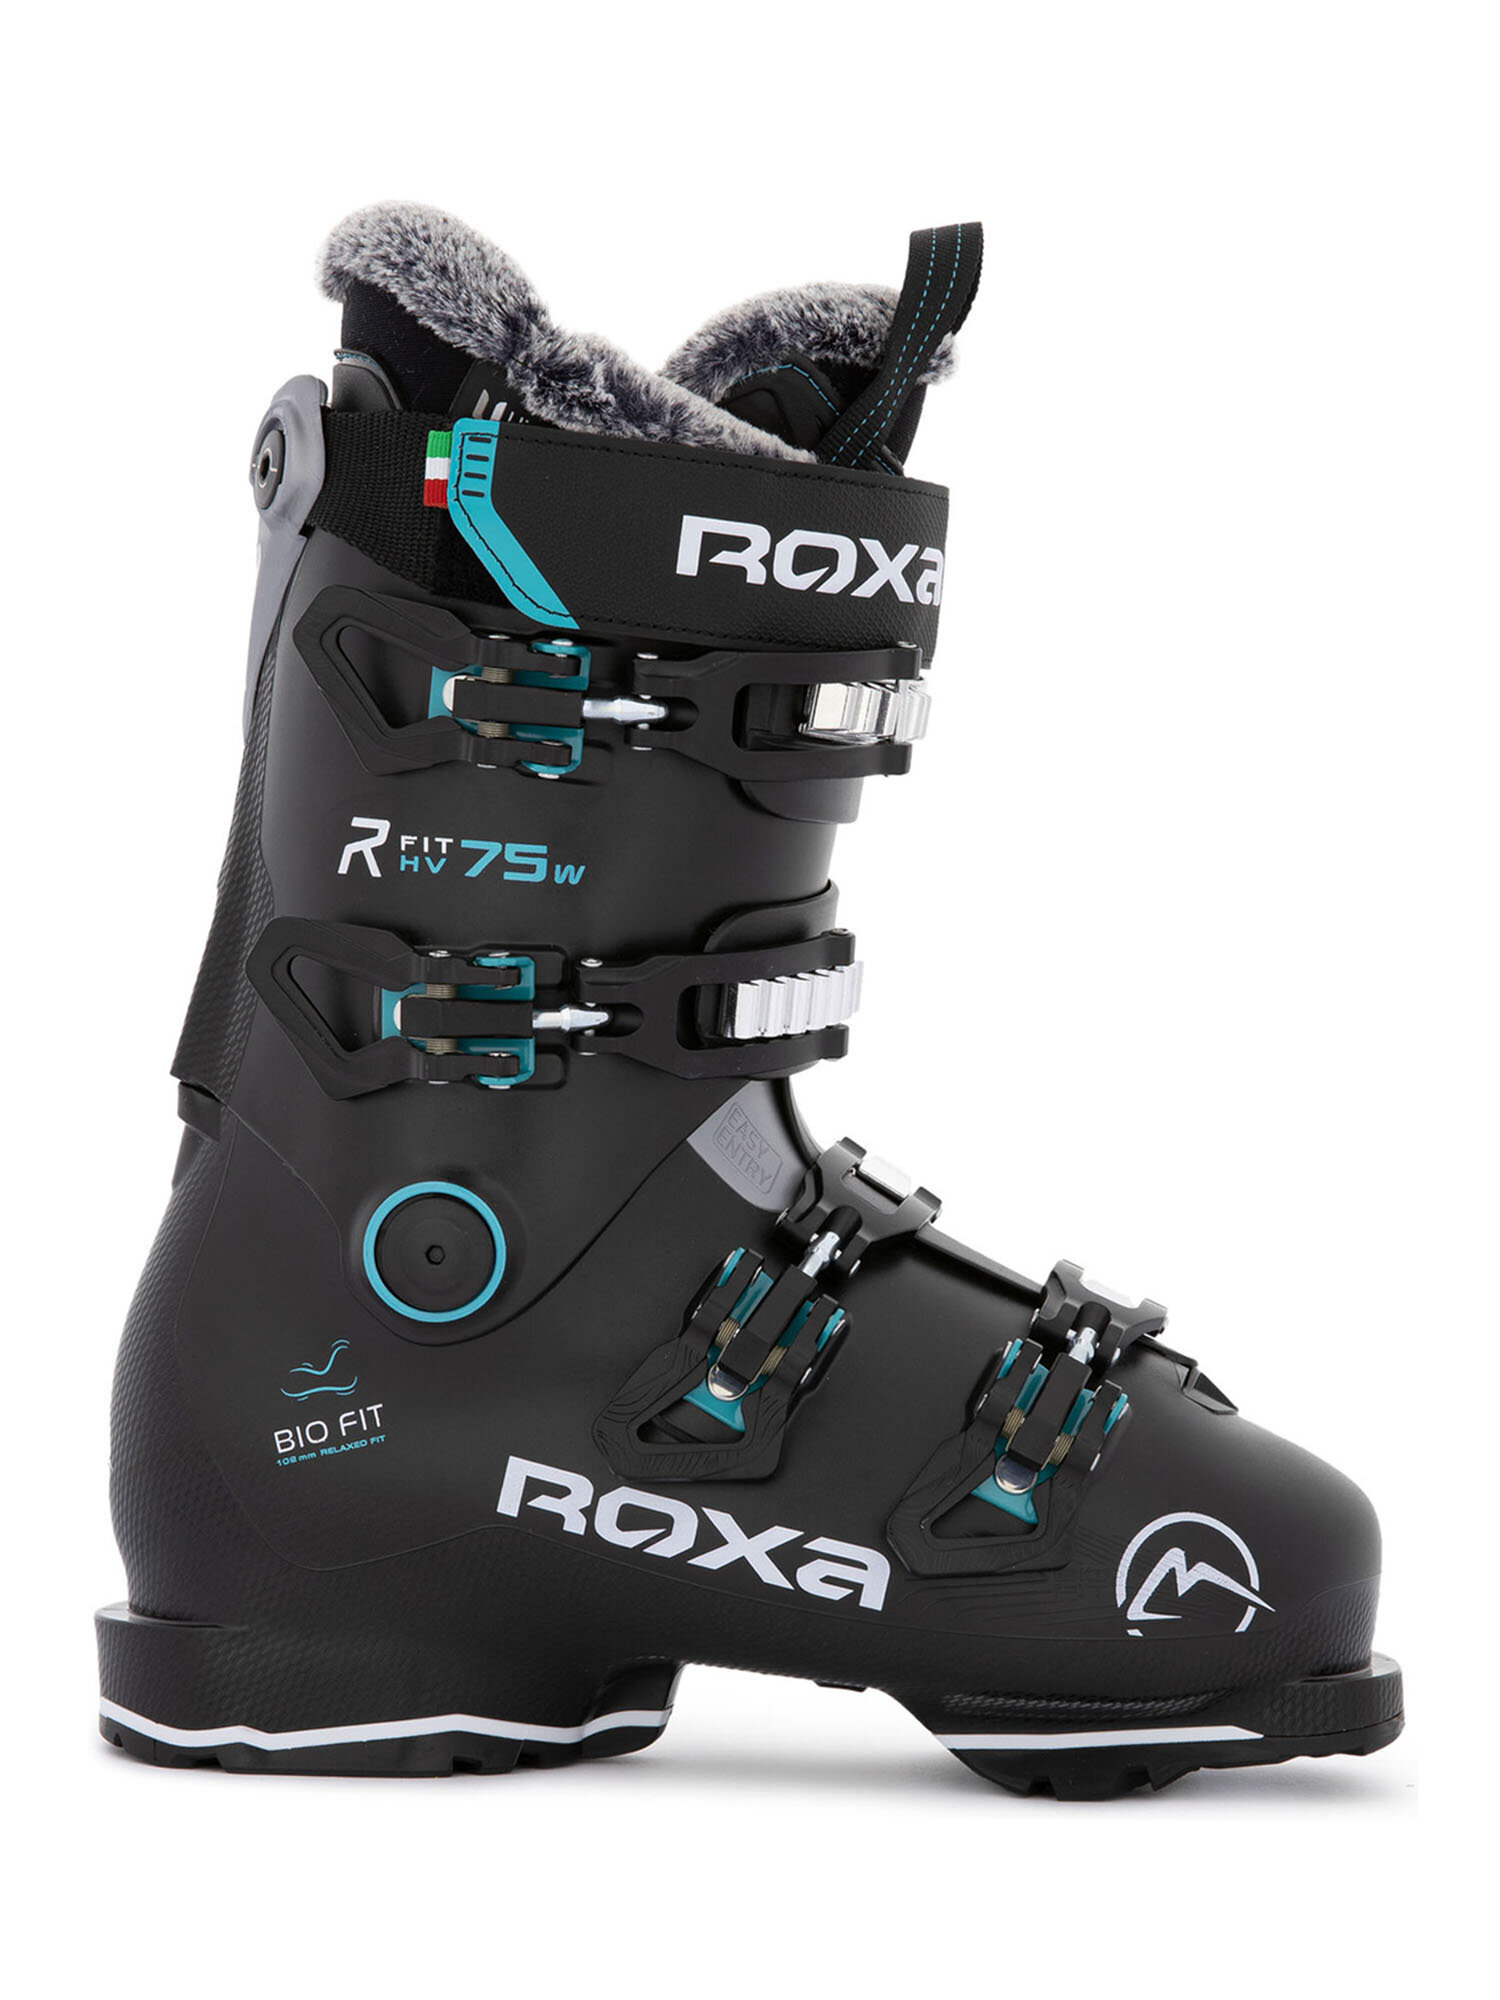 Горнолыжные ботинки ROXA Rfit W 75 Gw Black/Acqua (см:22,5)